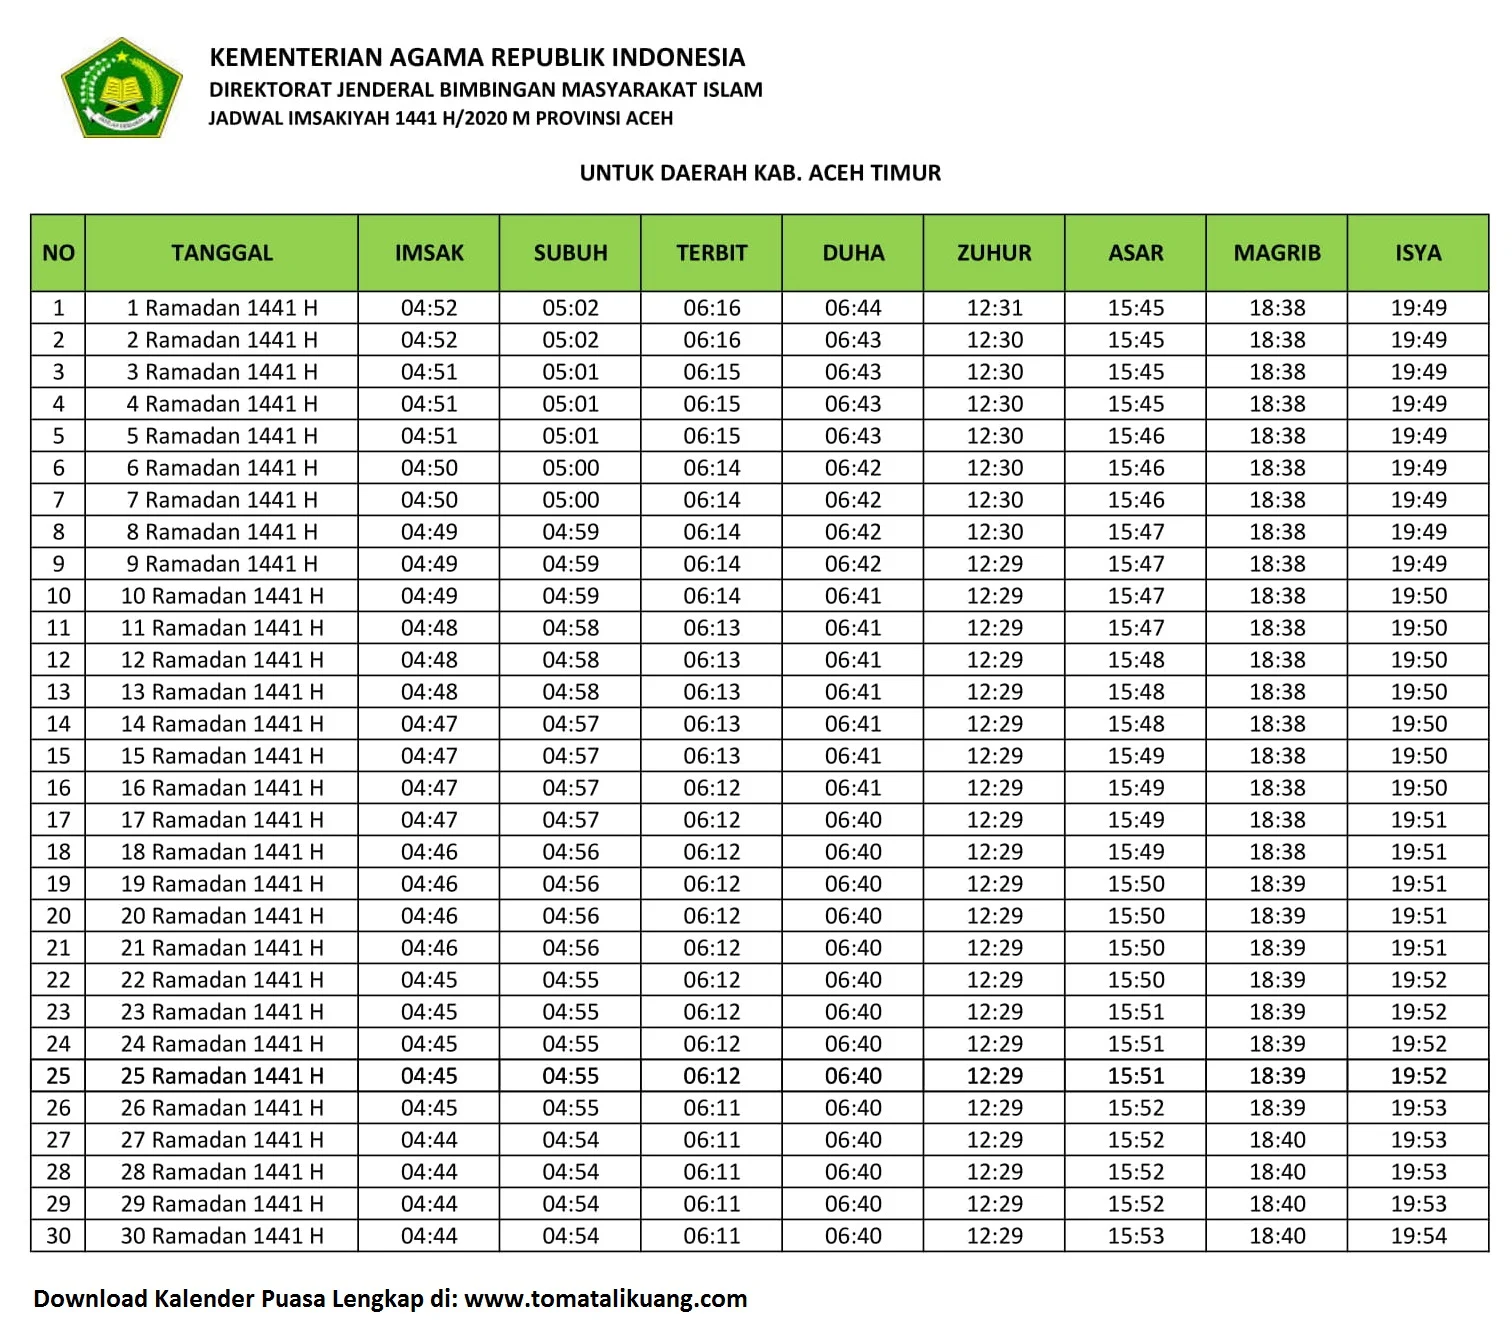 Jadwal Imsakiyah & Buka Puasa Kab. Aceh Timur 2020 / 1441 H (Kalender